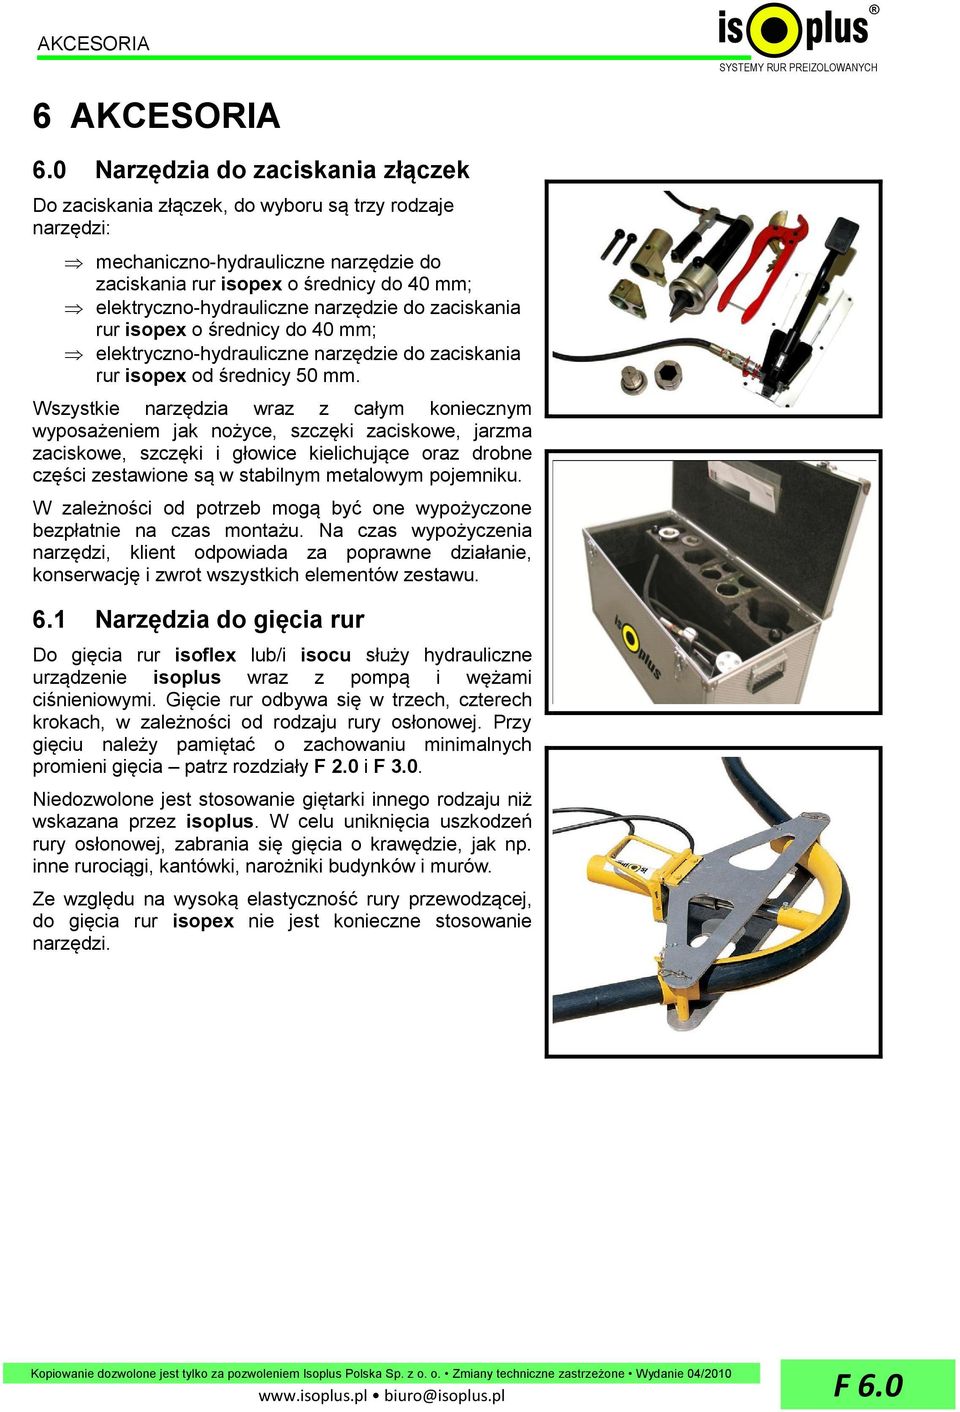 narzędzie do zaciskania rur isopex o średnicy do 40 mm; elektryczno-hydrauliczne narzędzie do zaciskania rur isopex od średnicy 50 mm.